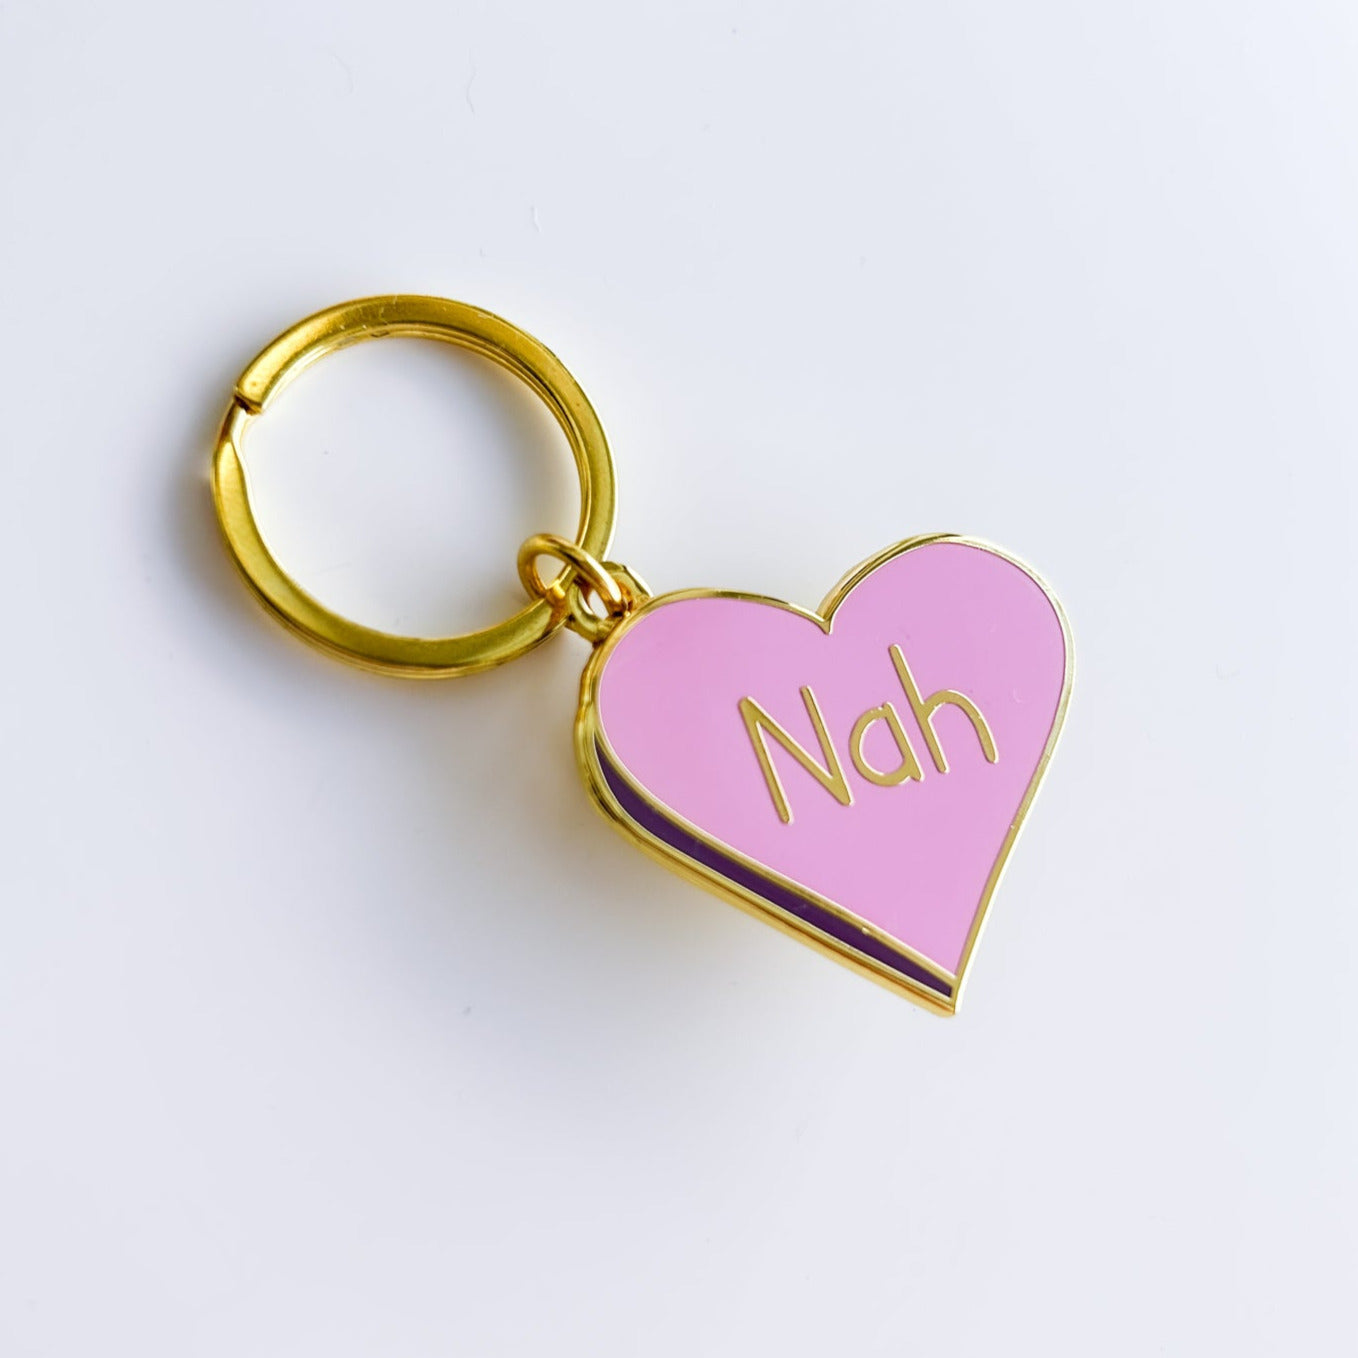 Nah Heart Keychain